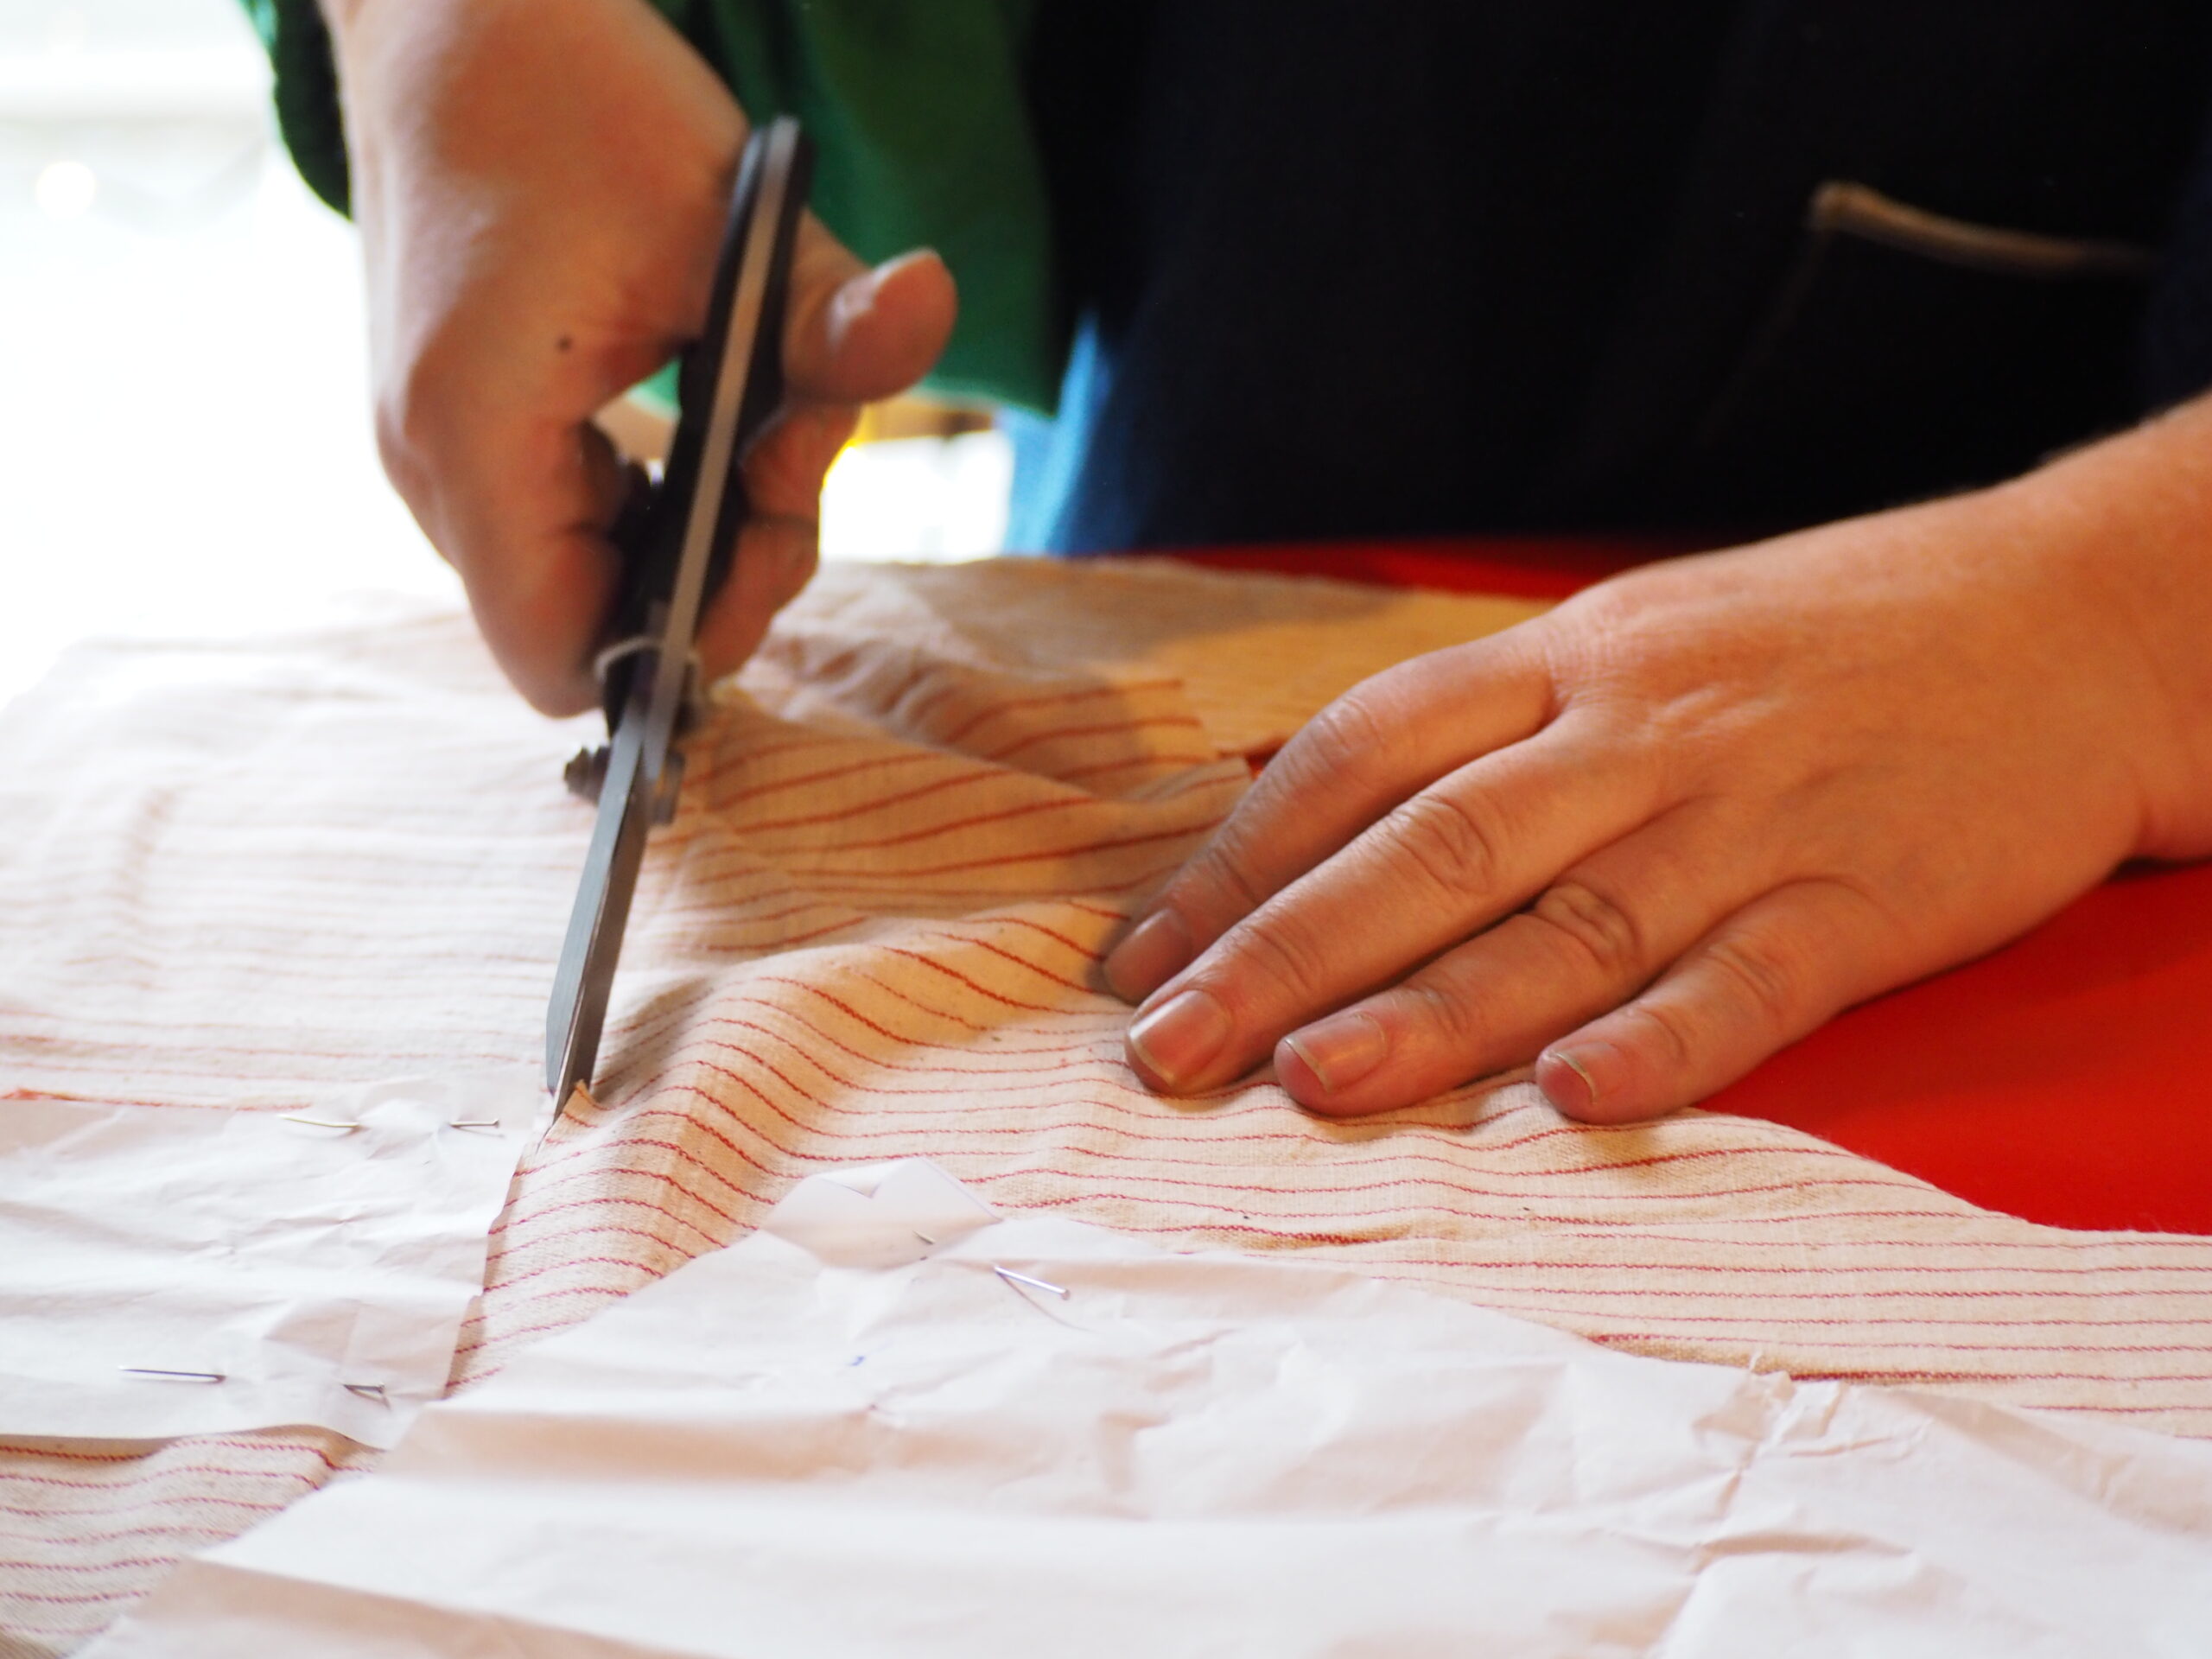 Stripete tekstiler appelerer spesielt til gründeren og designeren. Foto: Marte Østmoe